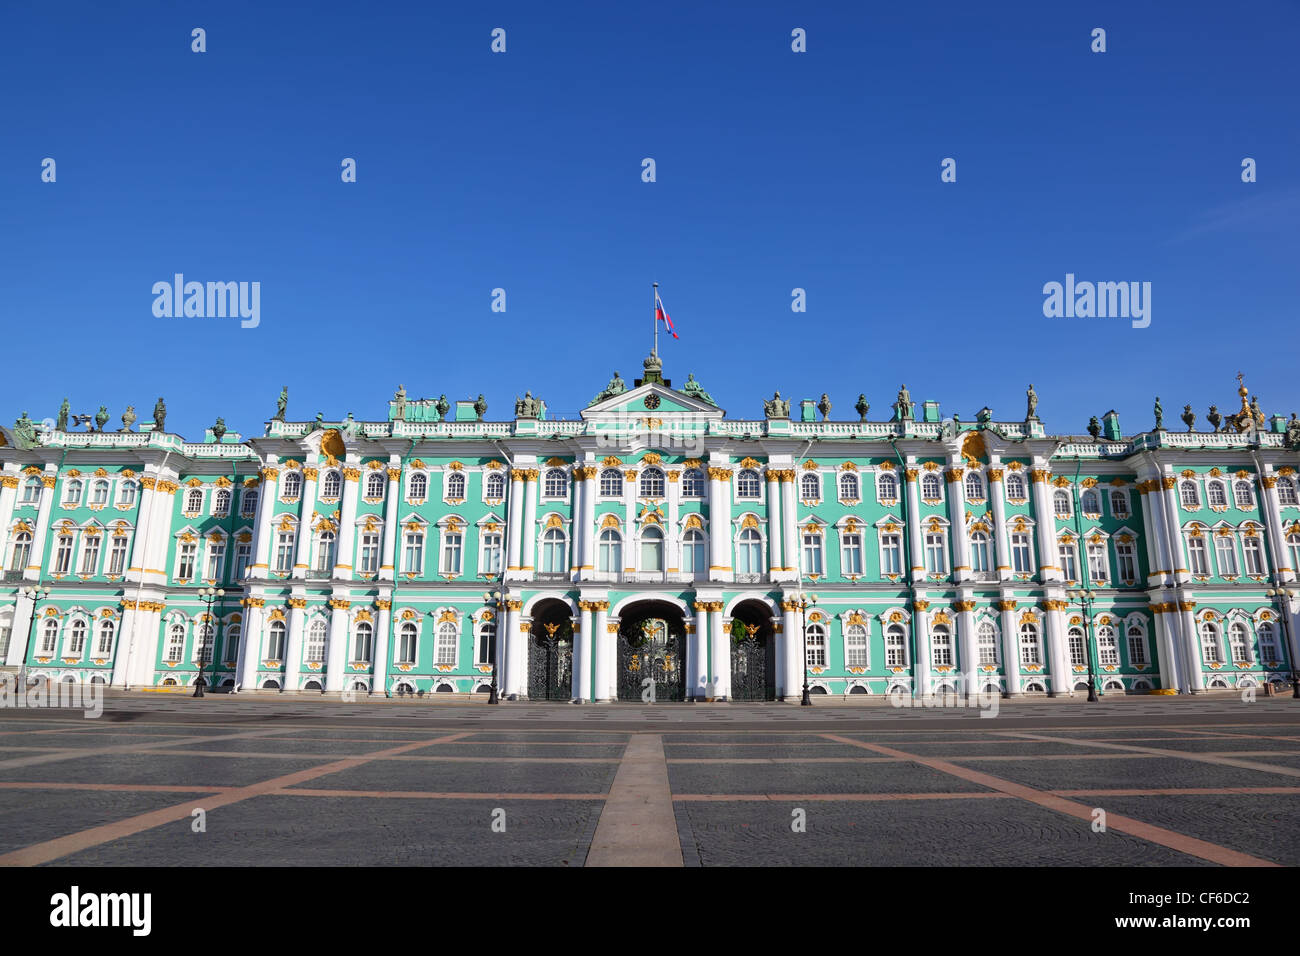 Palace Square, Hermitage museum. Saint-Petersburg, Russia Stock Photo